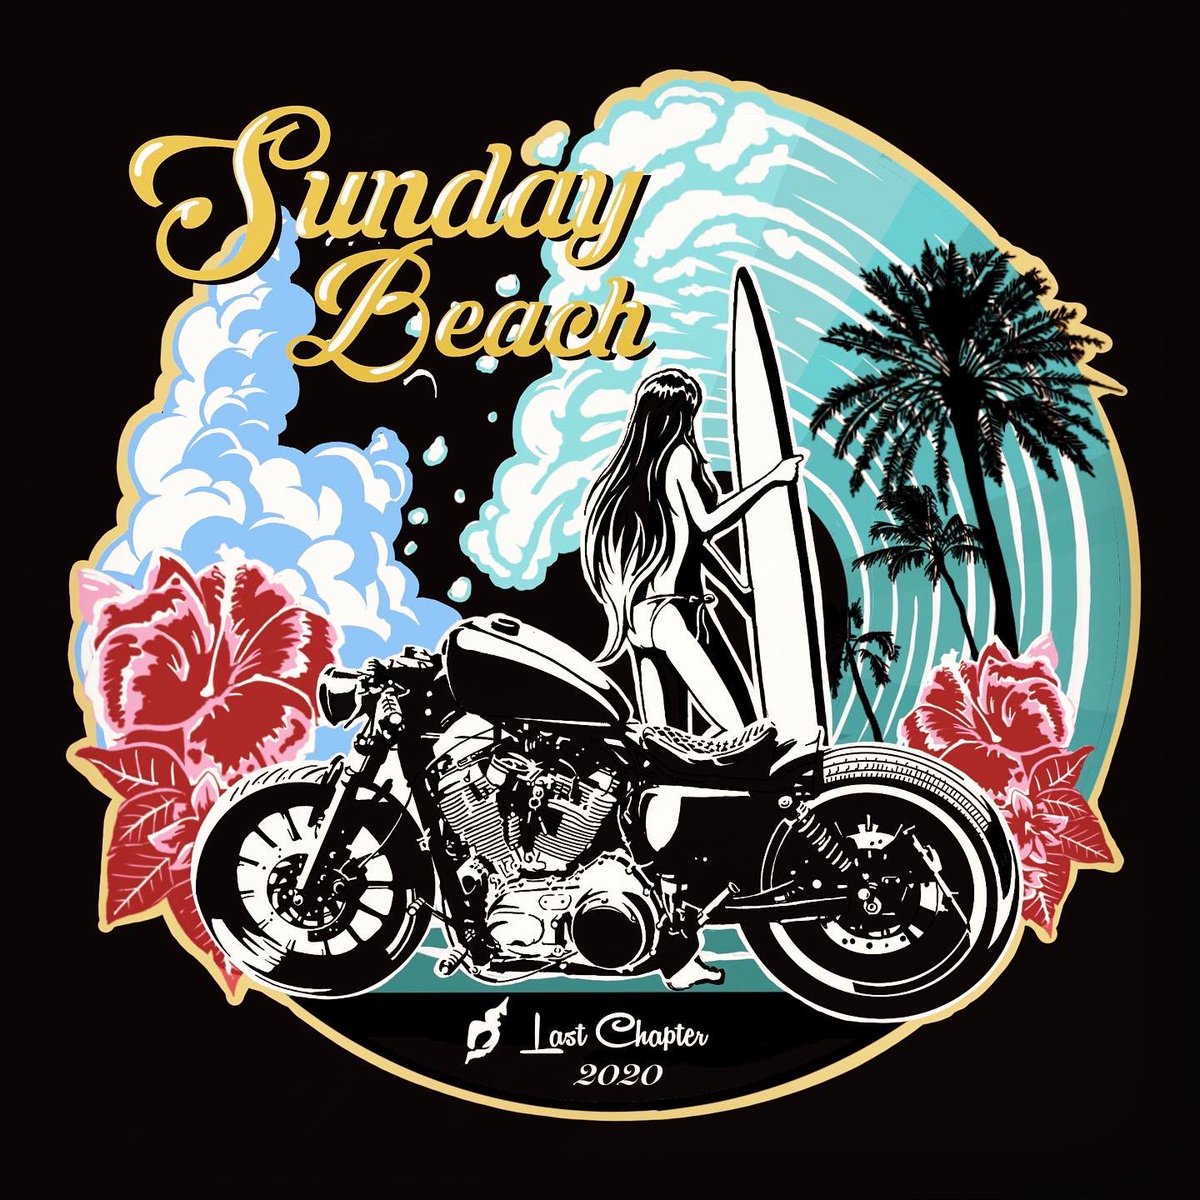 Tsujigaiton バイクイラスト Sunday Beach 夏が好きです イラスト 夏 ハーレーダビッドソン バイクイラスト